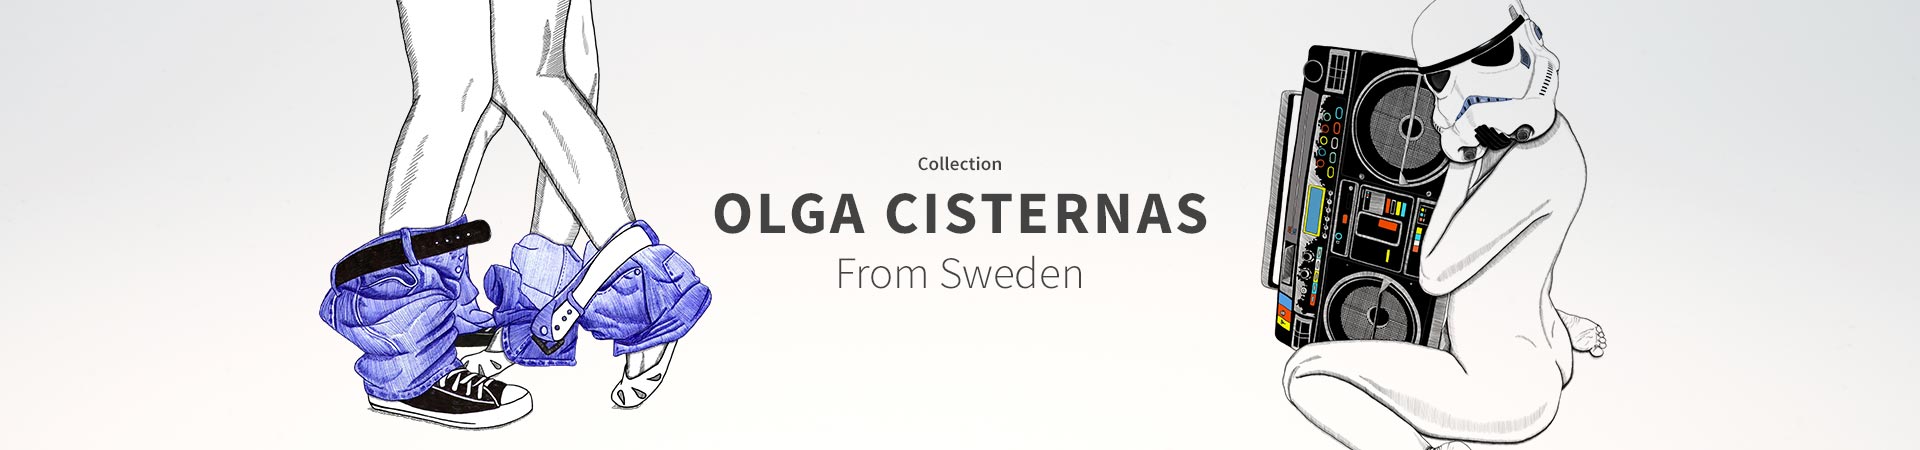 Collection Olga Cisternas